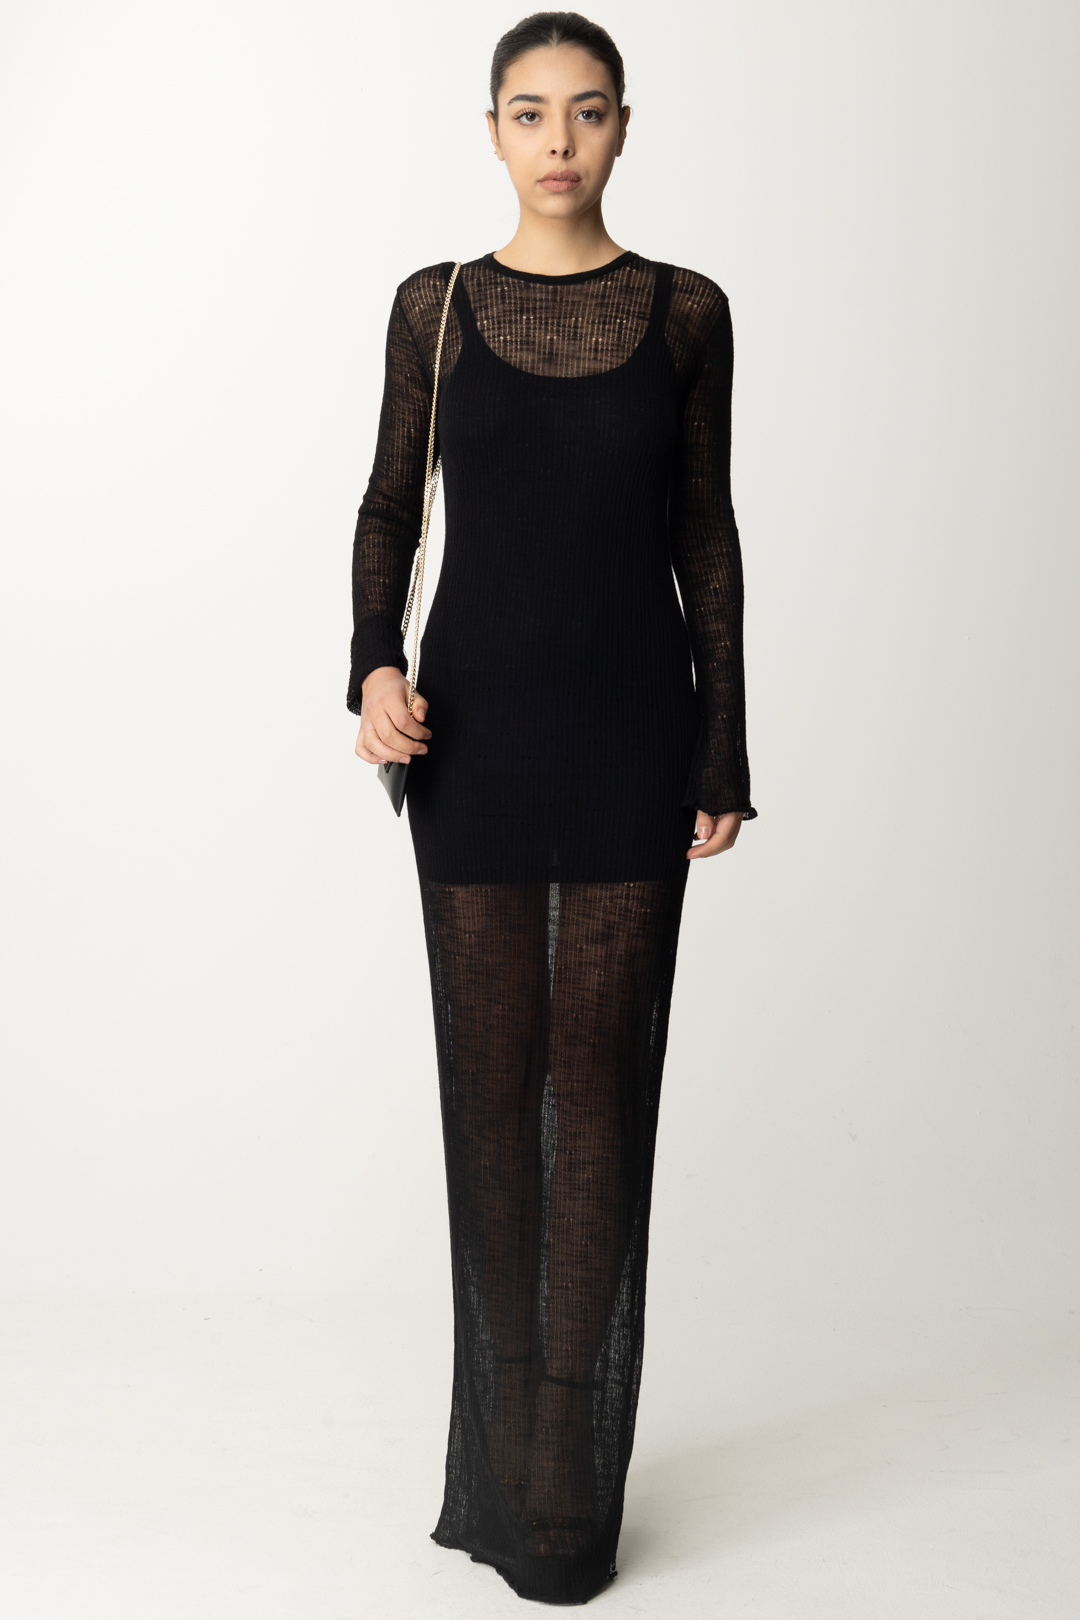 Vorschau: Aniye By Kim langes Kleid mit Unterkleid Black